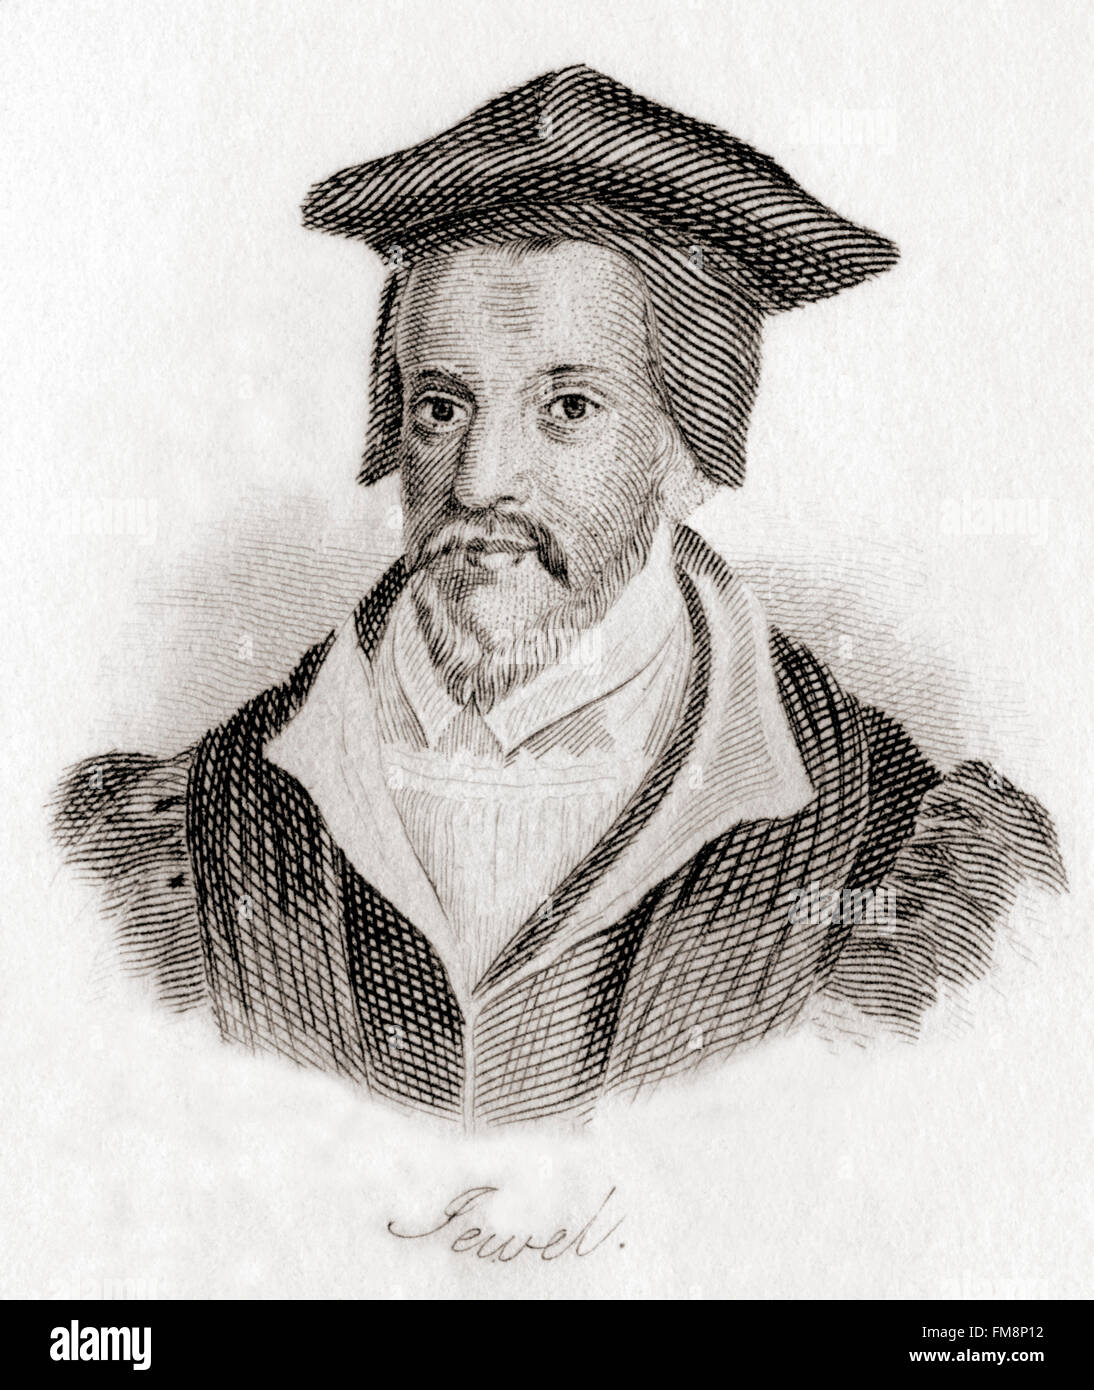 John gioiello, anche Jewell, 1522 - 1571. Vescovo inglese di Salisbury. Foto Stock